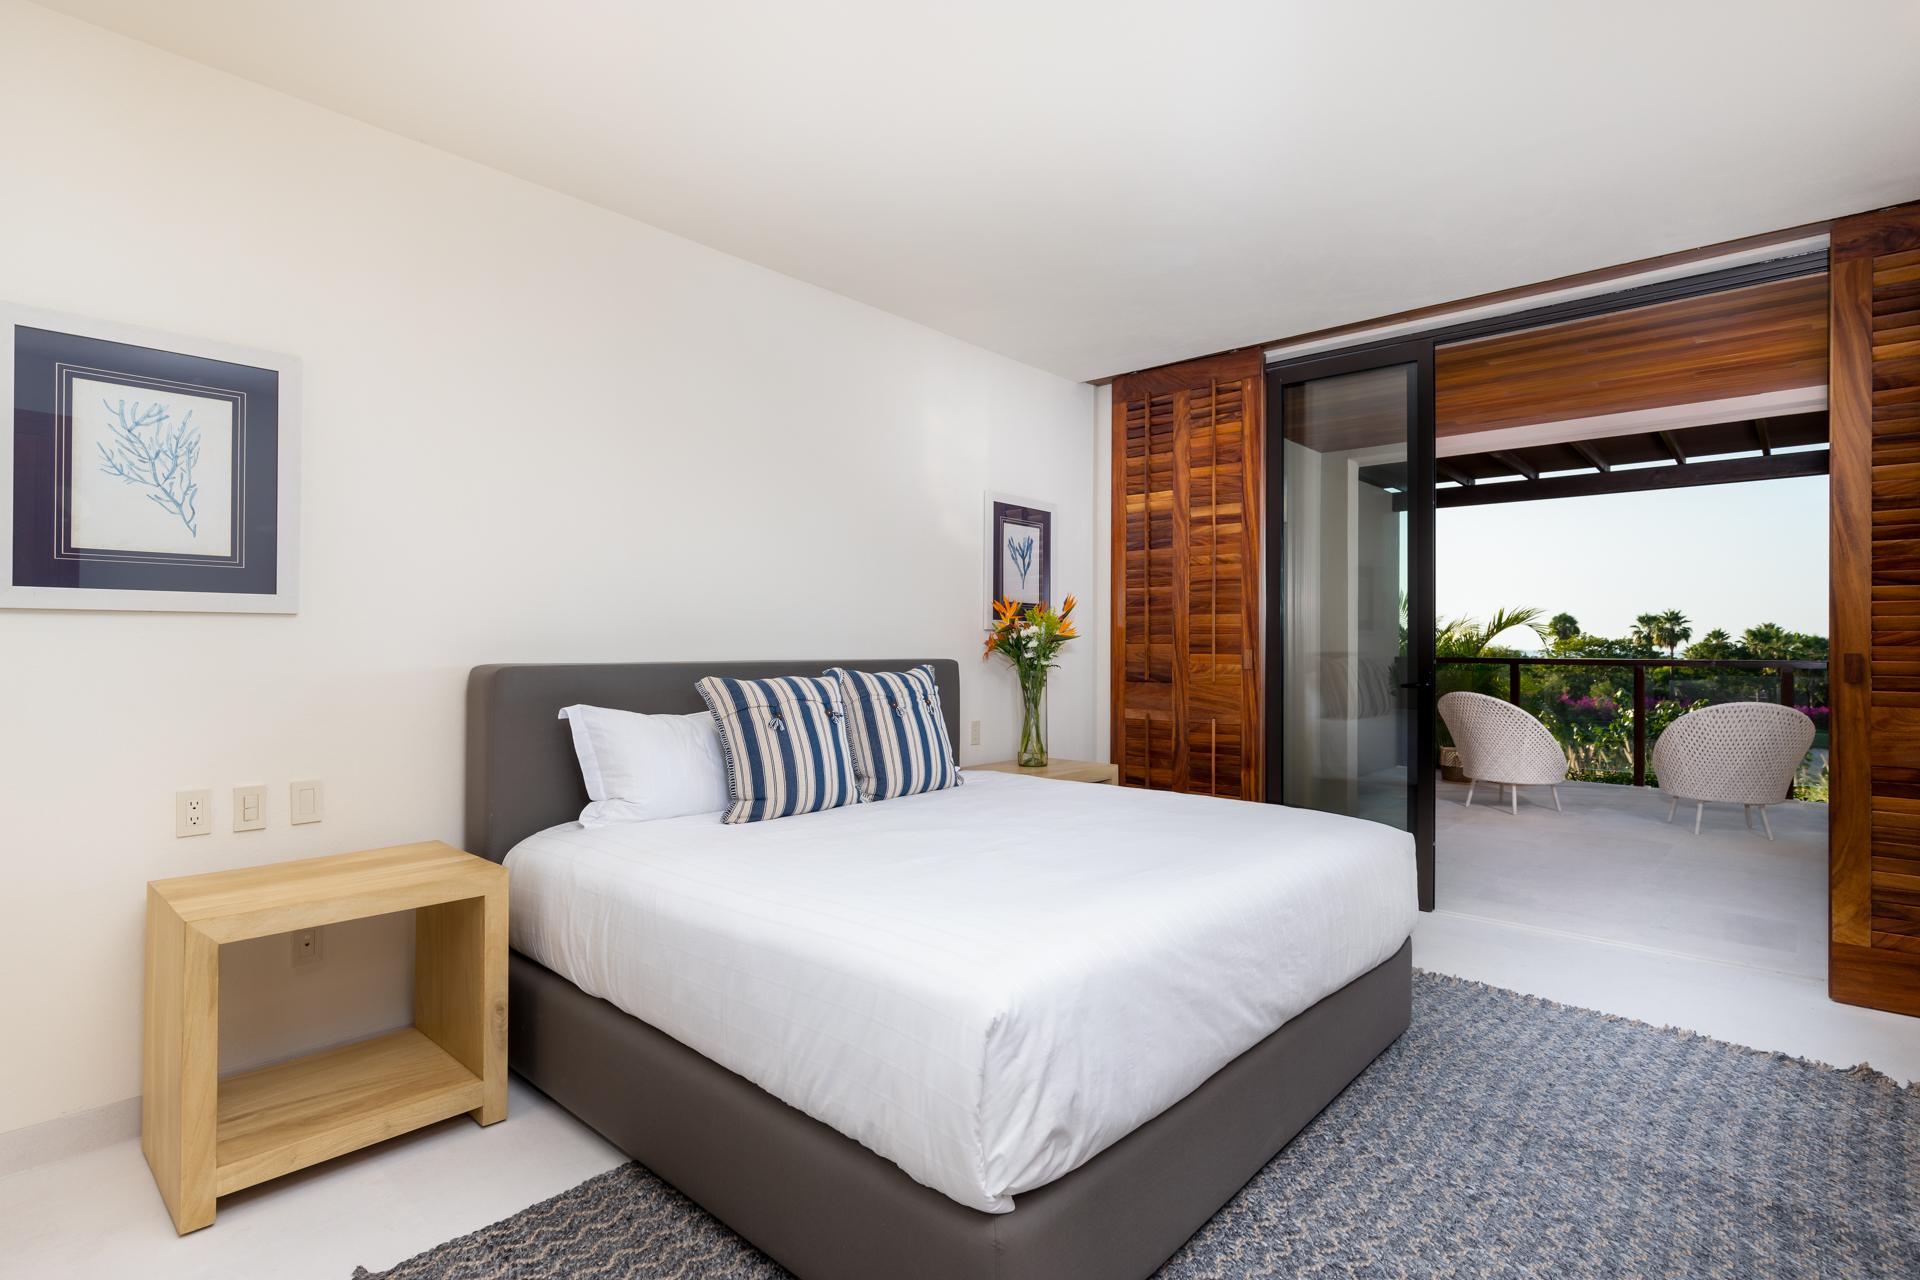 Two bedroom, ocean view room, luxury house rental